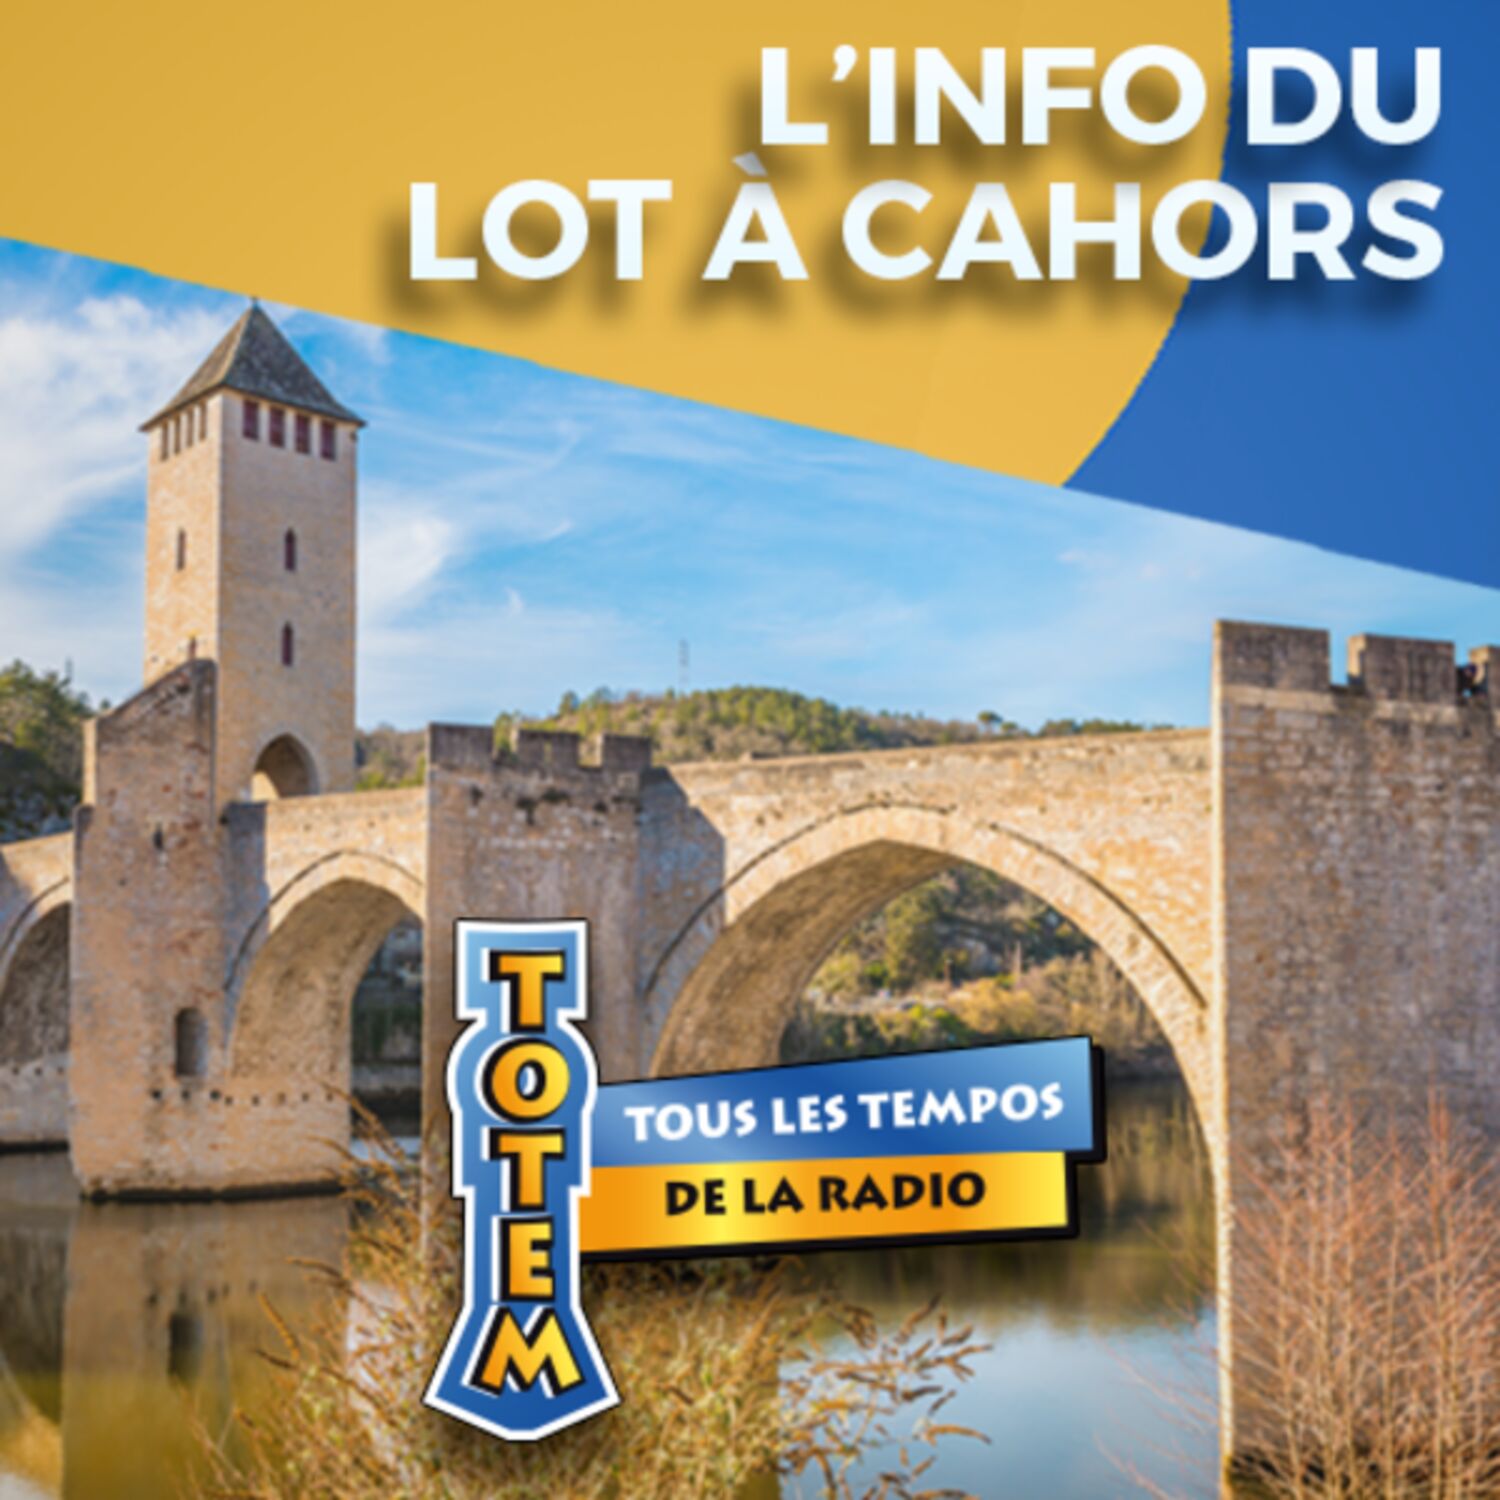 L'info du Lot à Cahors du 11/05/23 à 11h59